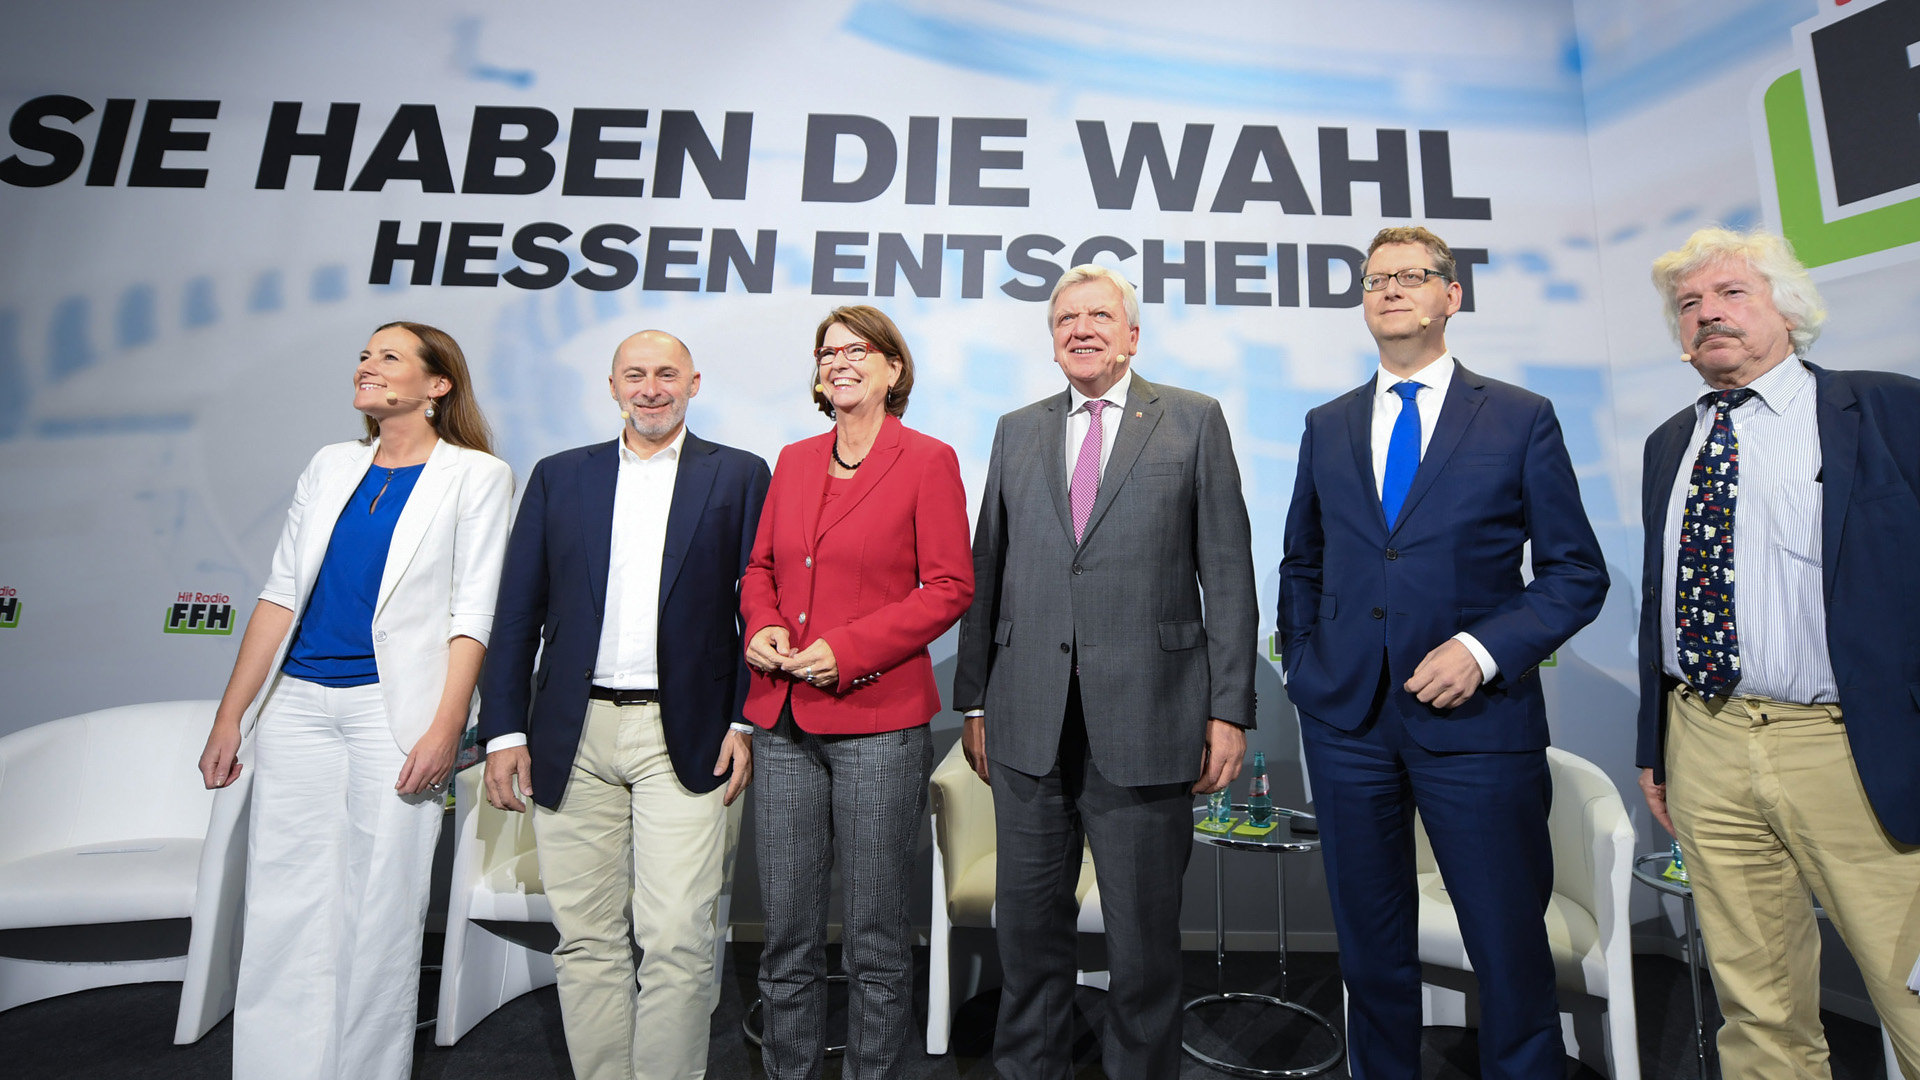 Die Spitzenkandidaten für die Hessen-Wahl (von links nach rechts): Janine Wissler (Die Linke), René Rock (FDP), Priska Hinz (Grüne), Volker Bouffier (CDU), Thorsten Schäfer-Gümbel (SPD), und Rainer Rahn (AfD). | Bildquelle: dpa